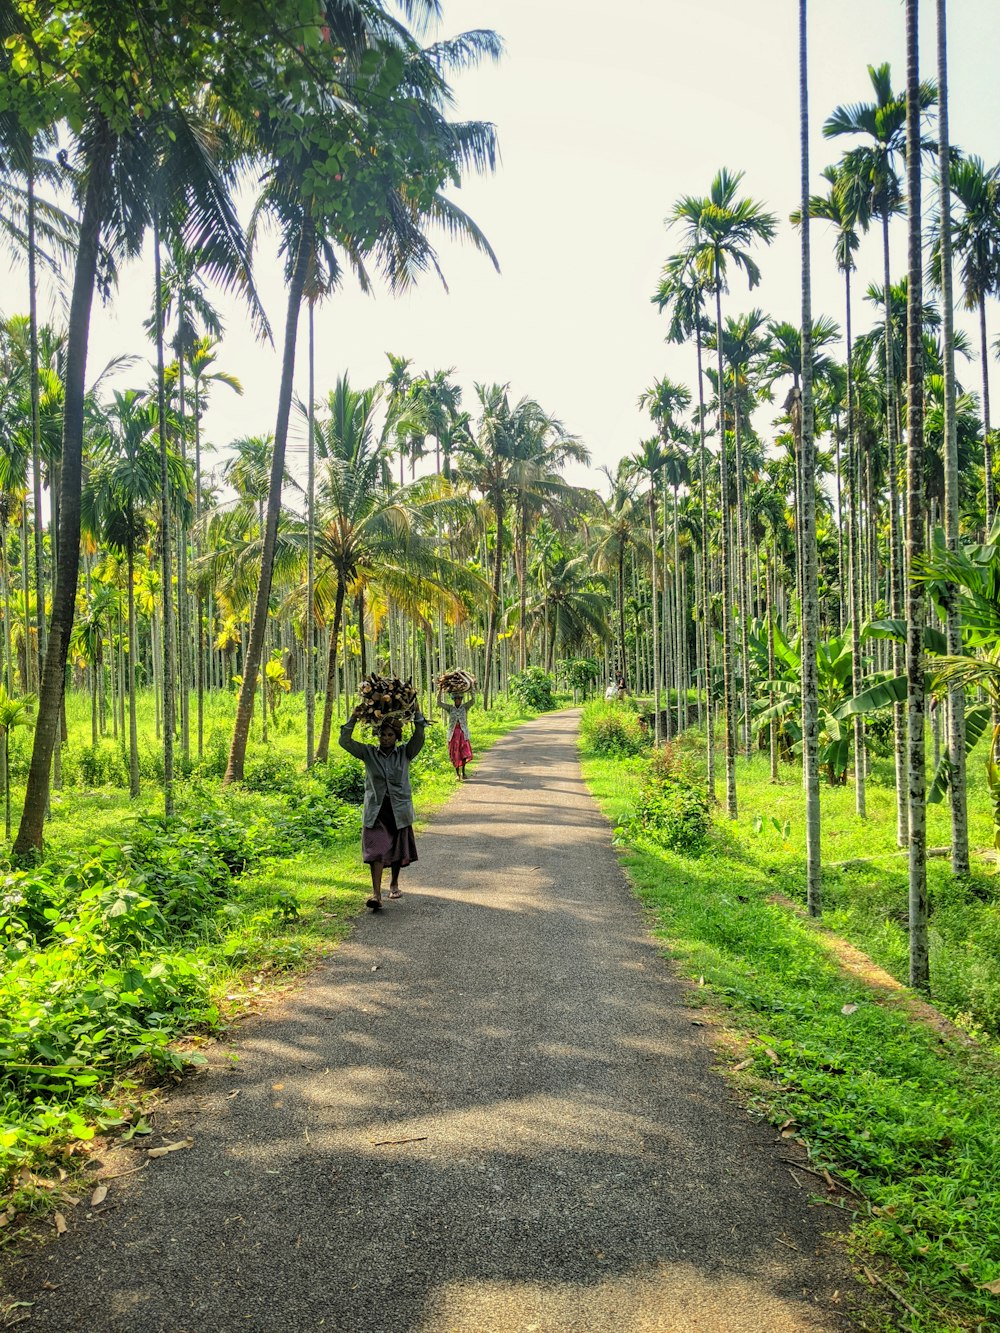 Mujer en chaqueta negra caminando por el camino de asfalto gris entre palmeras verdes durante el día